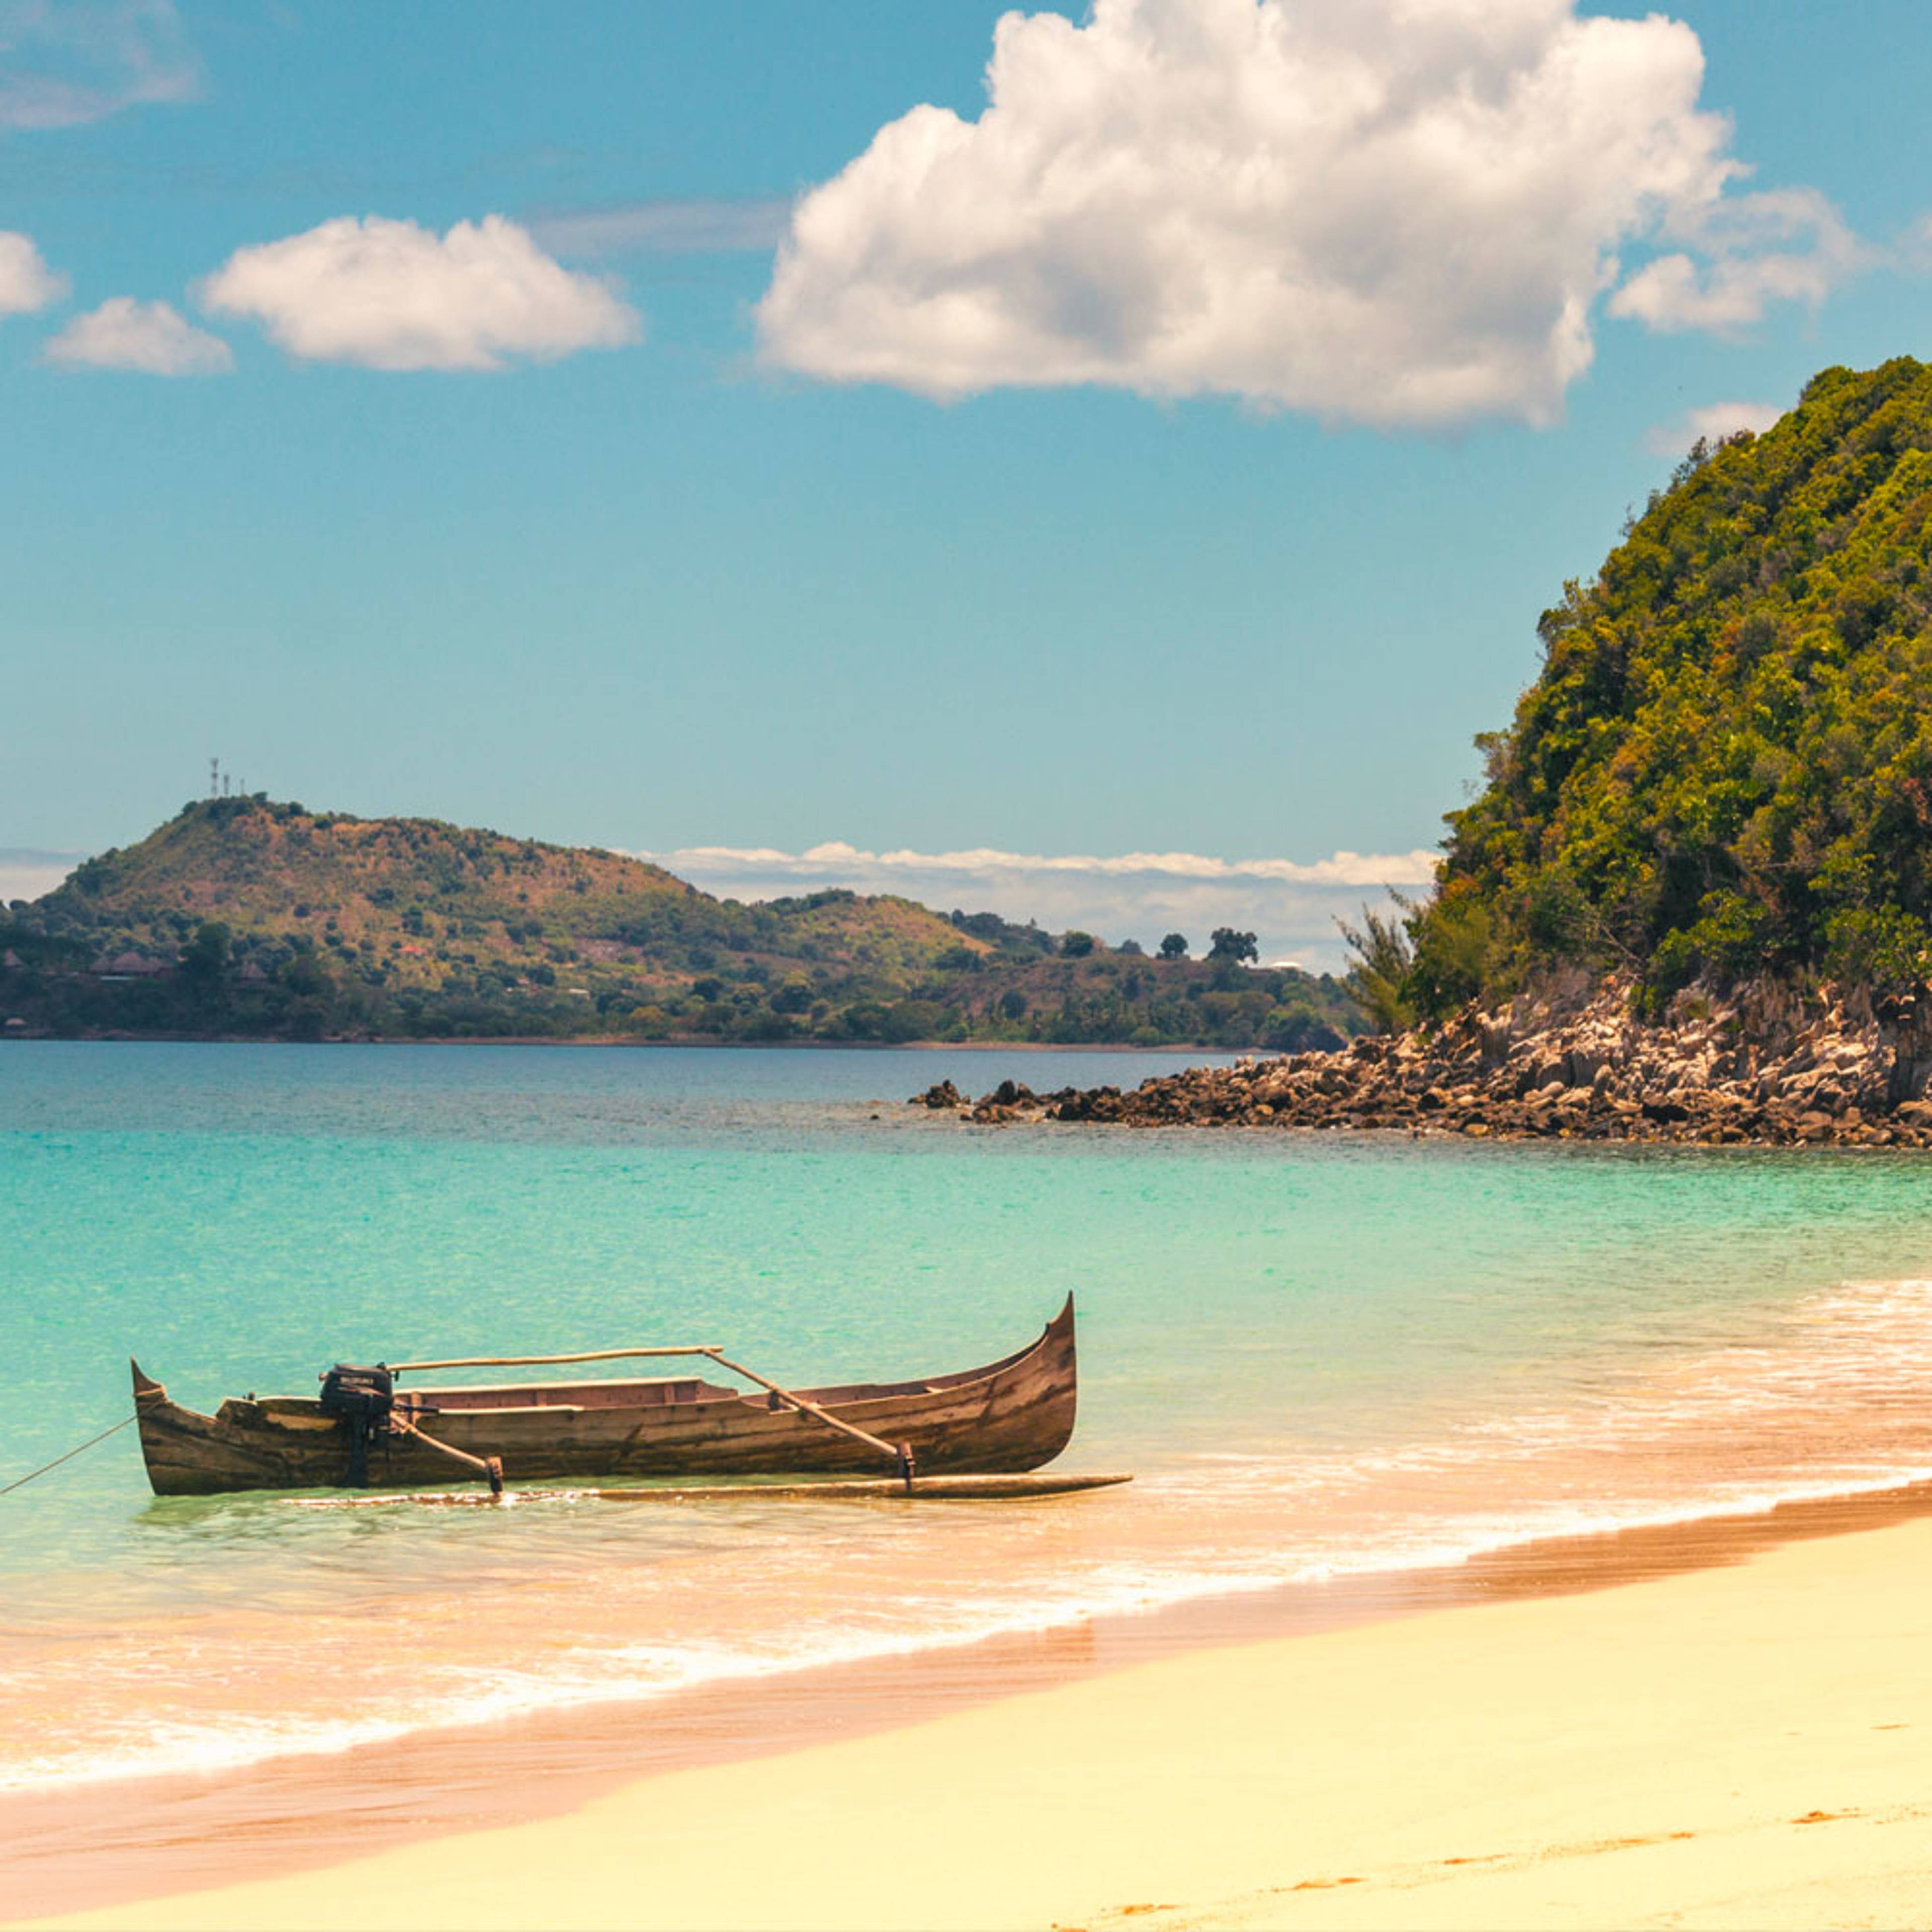 Découvrez les plus belles plages lors de votre voyage à Madagascar 100% sur mesure